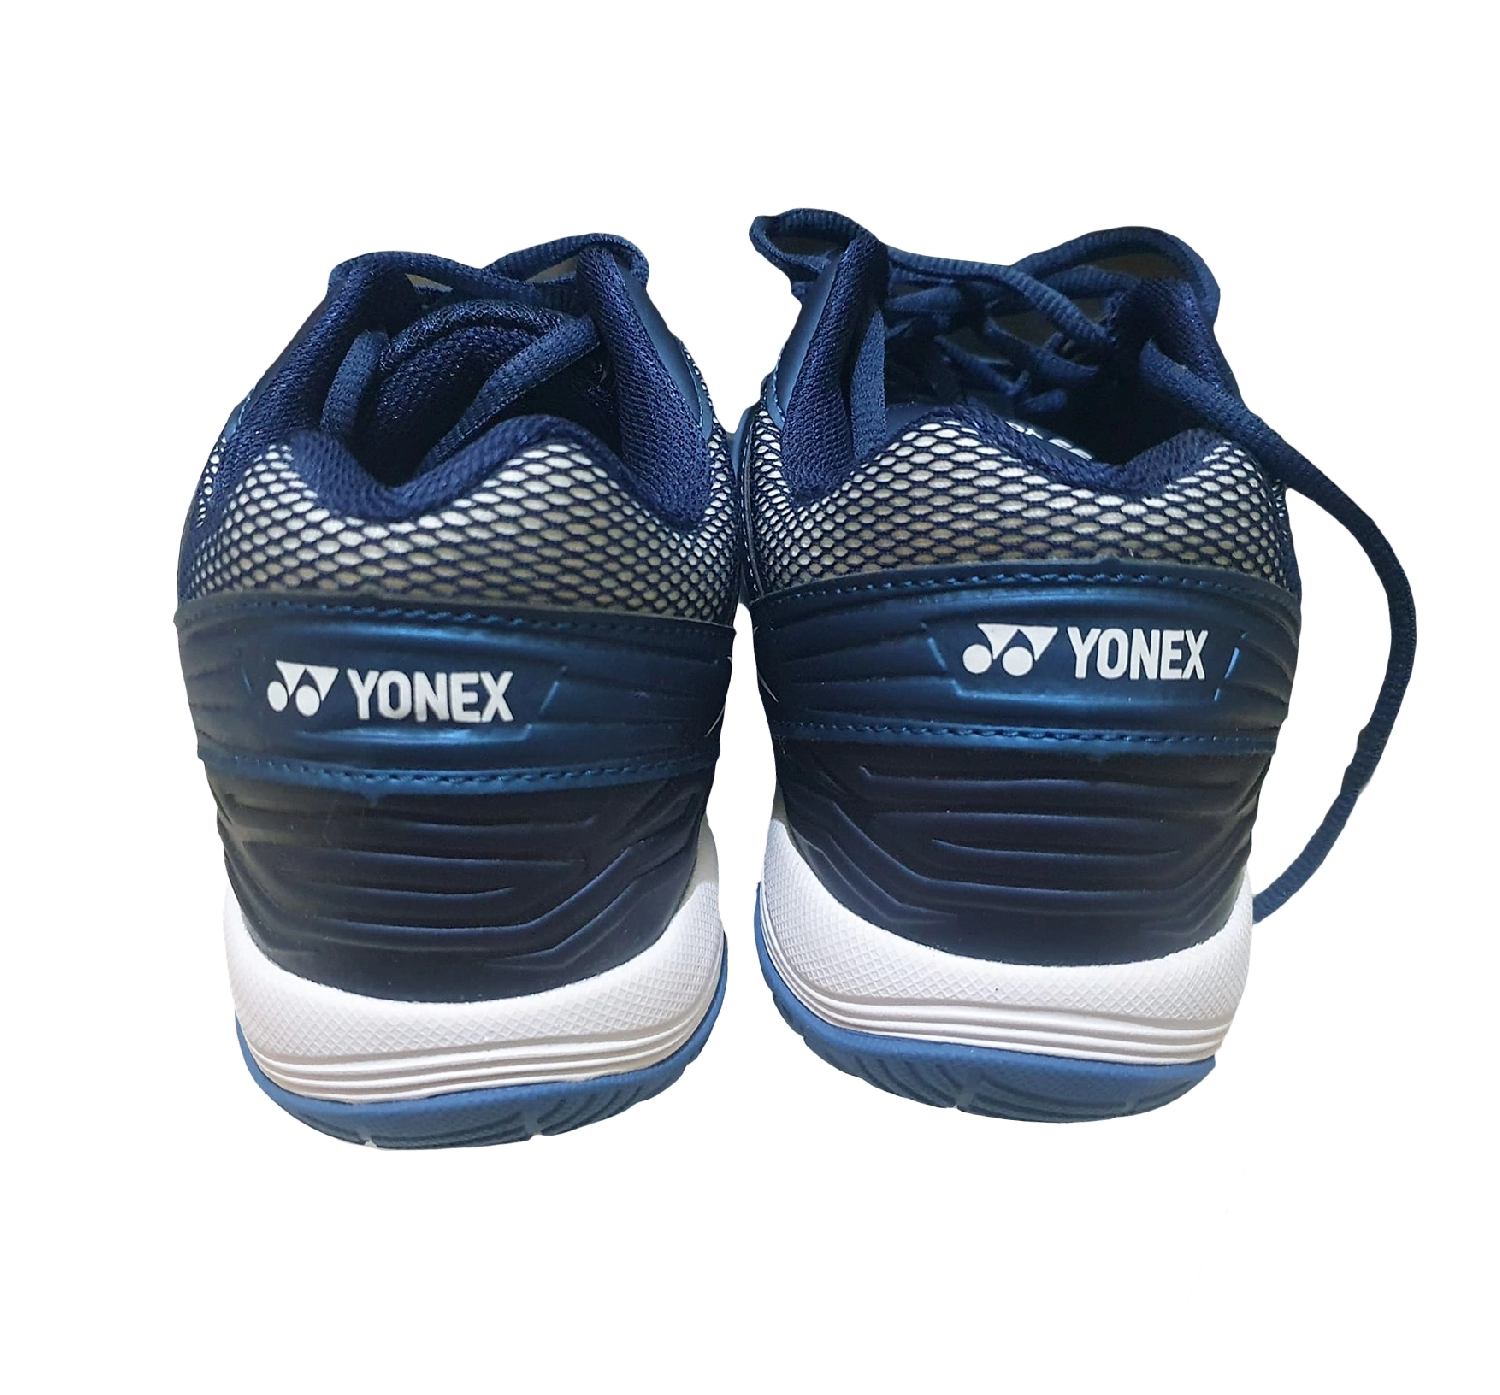 Giày cầu lông Yonex Atlas (D.CB/Bl) chính hãng